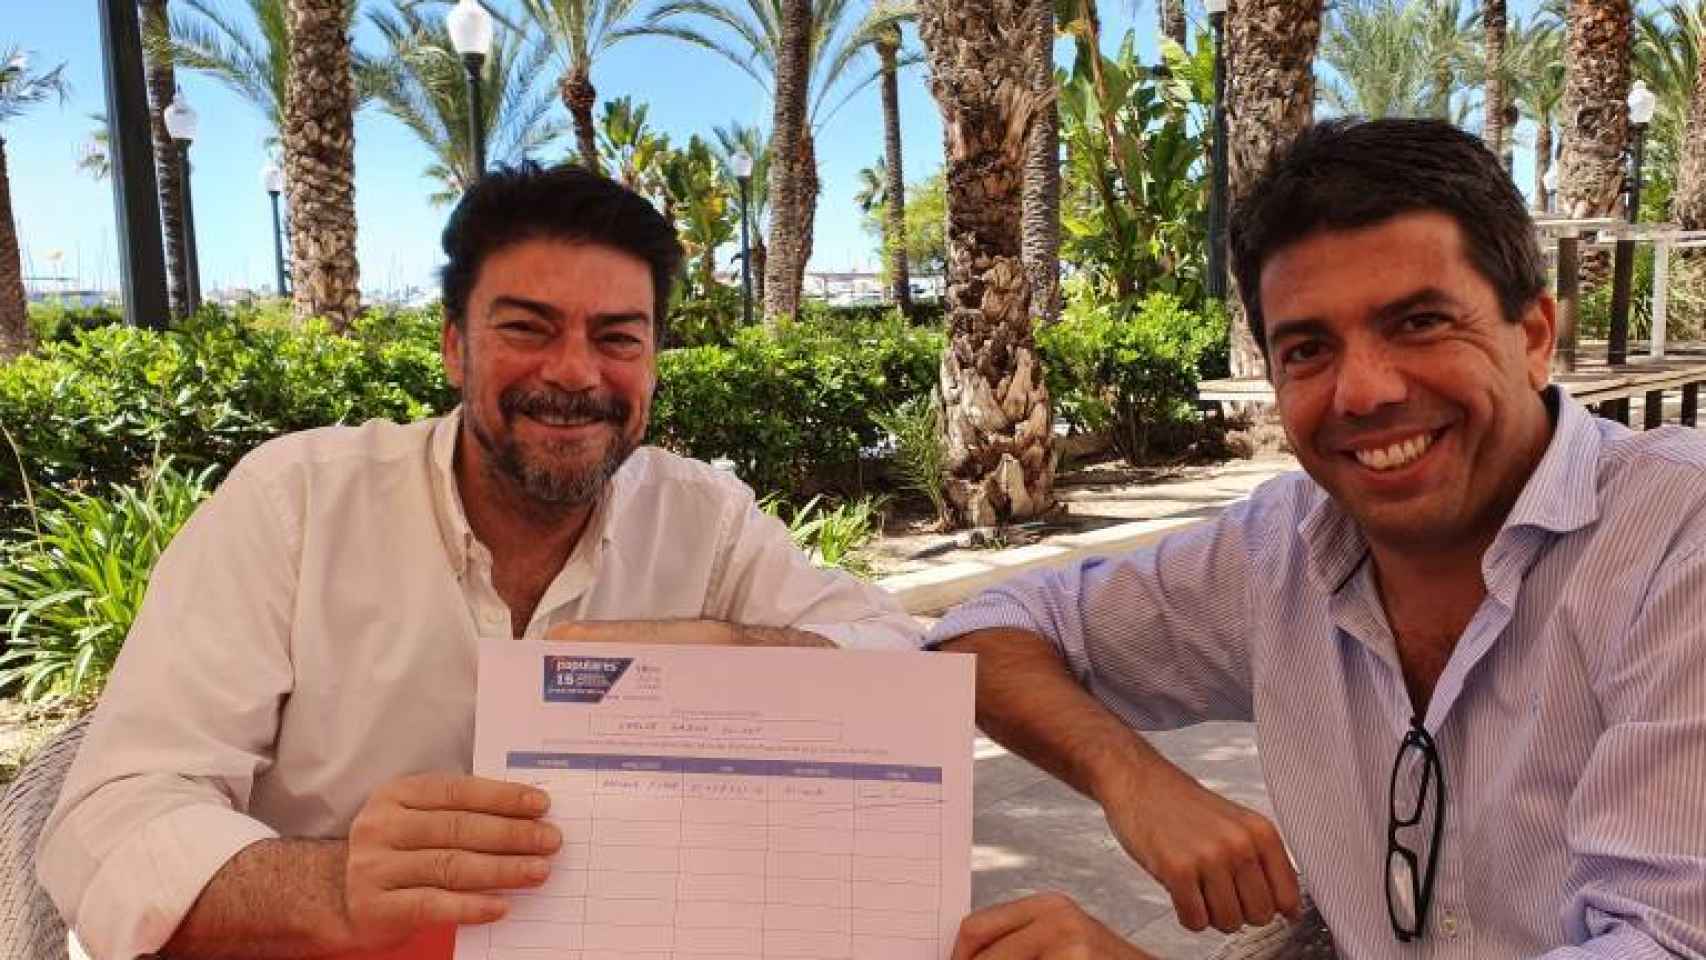 Carlos Mazón y Luis Barcala en junio de 2020 durante la recogida de avales para la candidatura del primero.